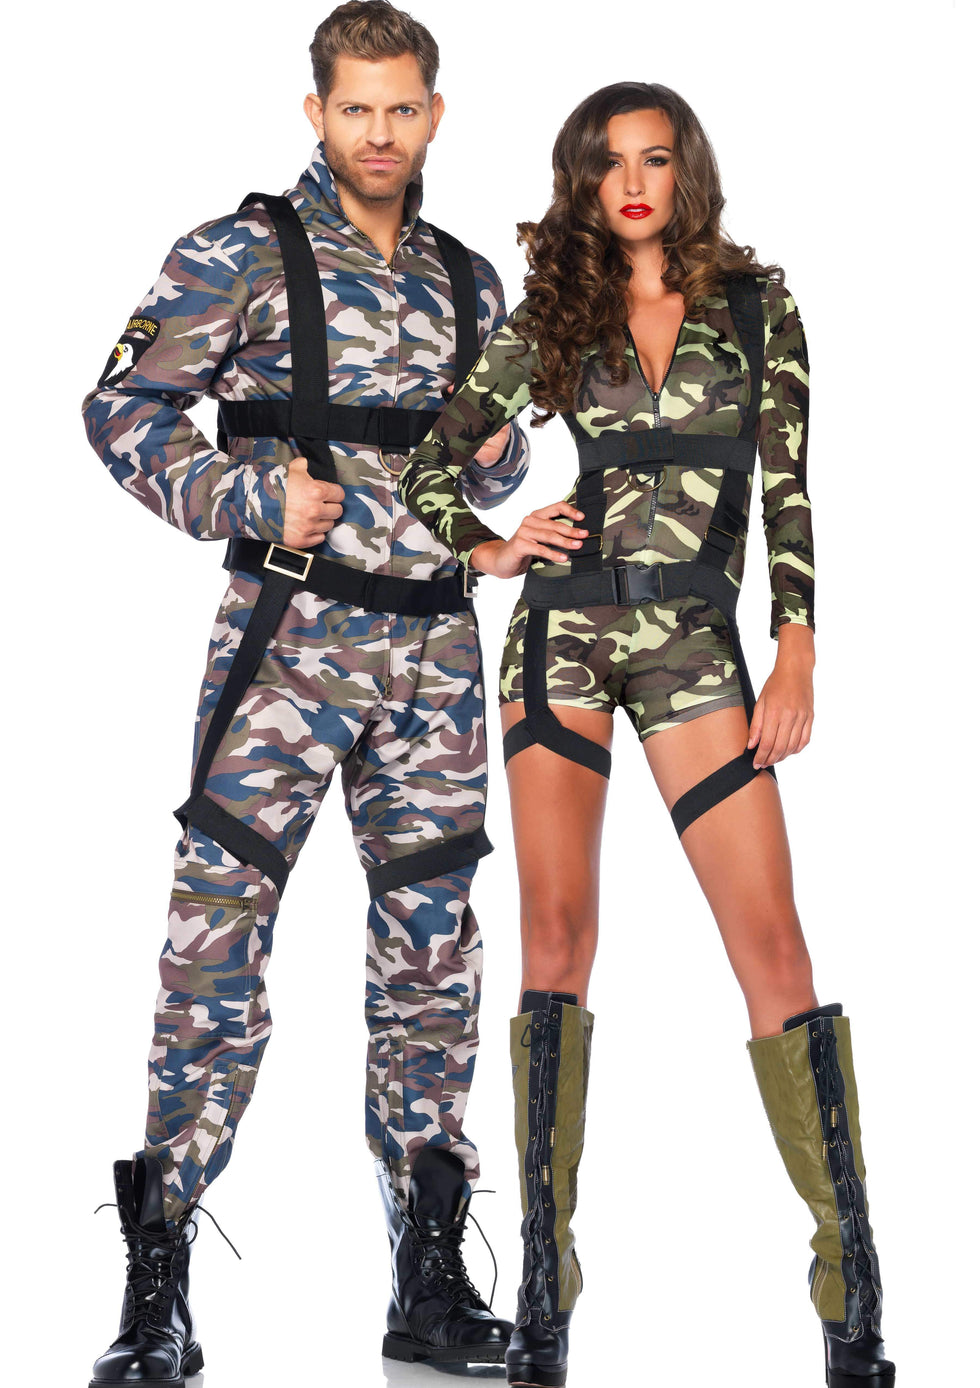 Goin' Commando Costume - Camo – SohoGirl.com